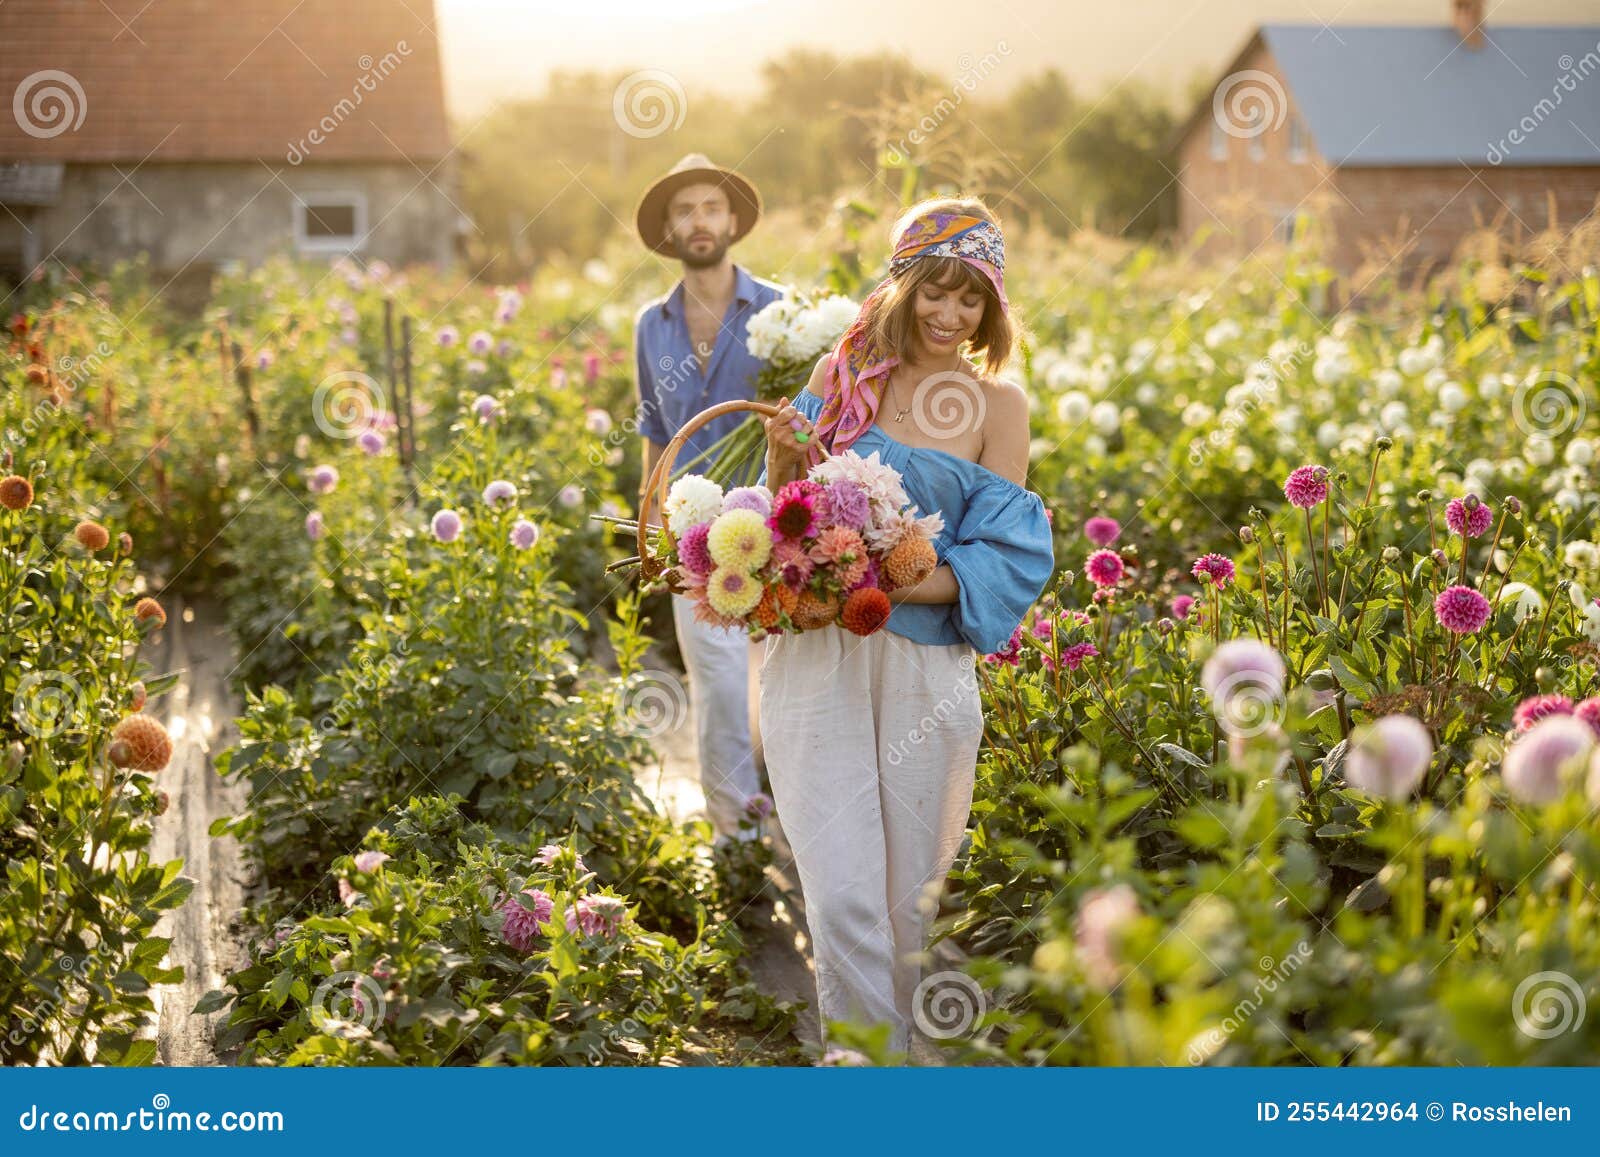 母女在现代农庄采摘-蓝牛仔影像-中国原创广告影像素材